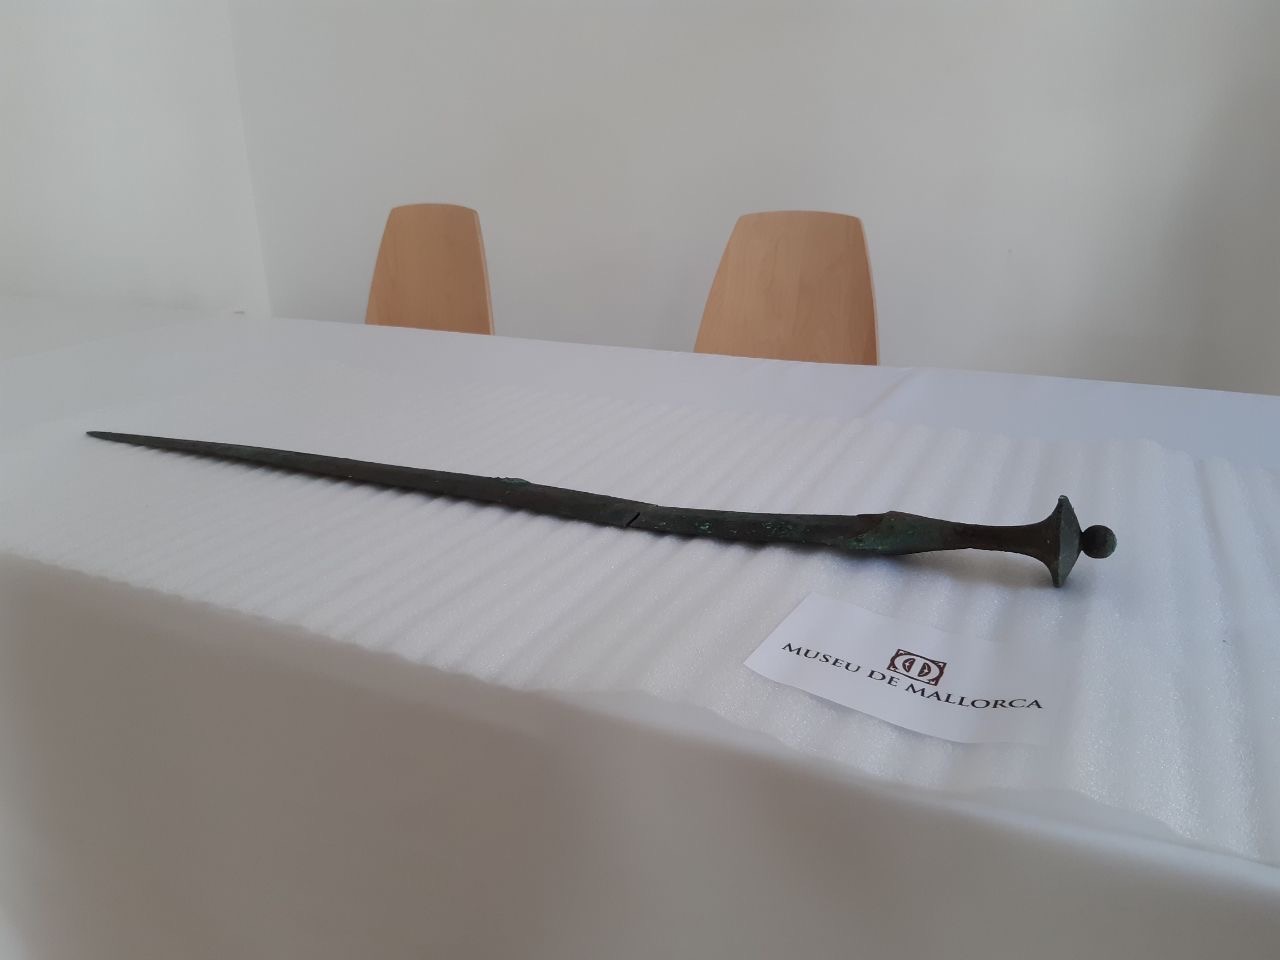 Recepció espasa prehistòrica al Museu de Mallorca